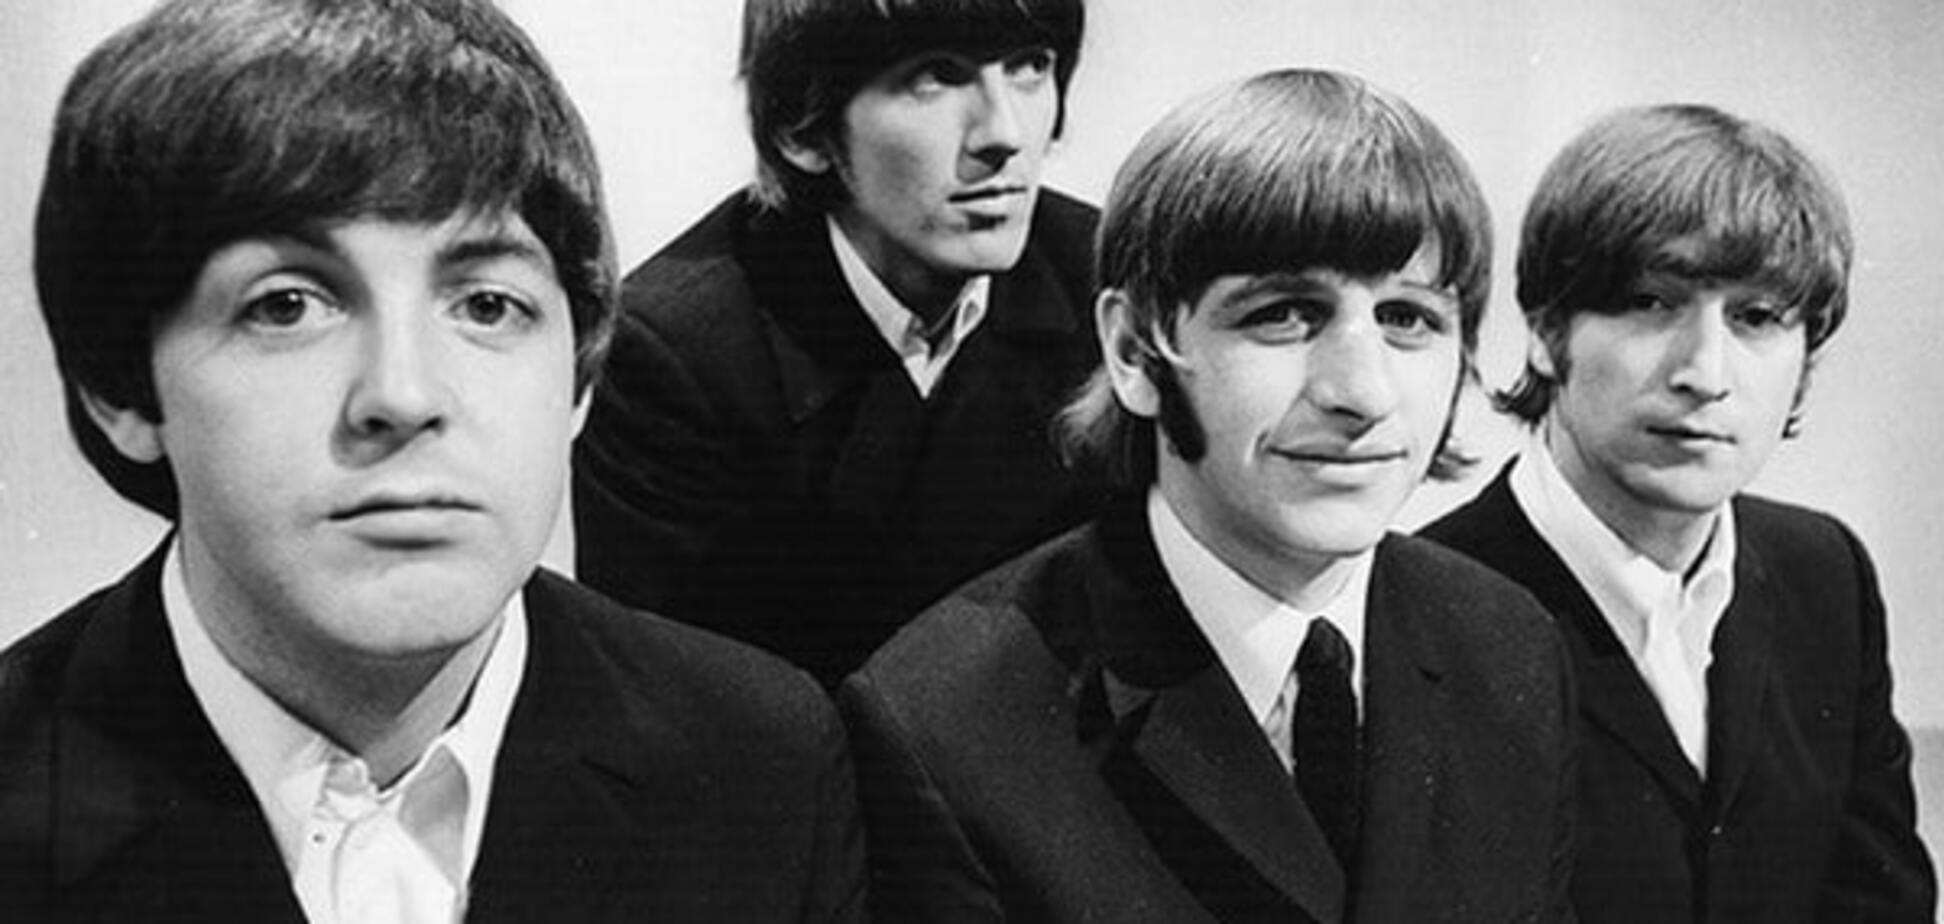 Обнаружена неизвестная запись The Beatles